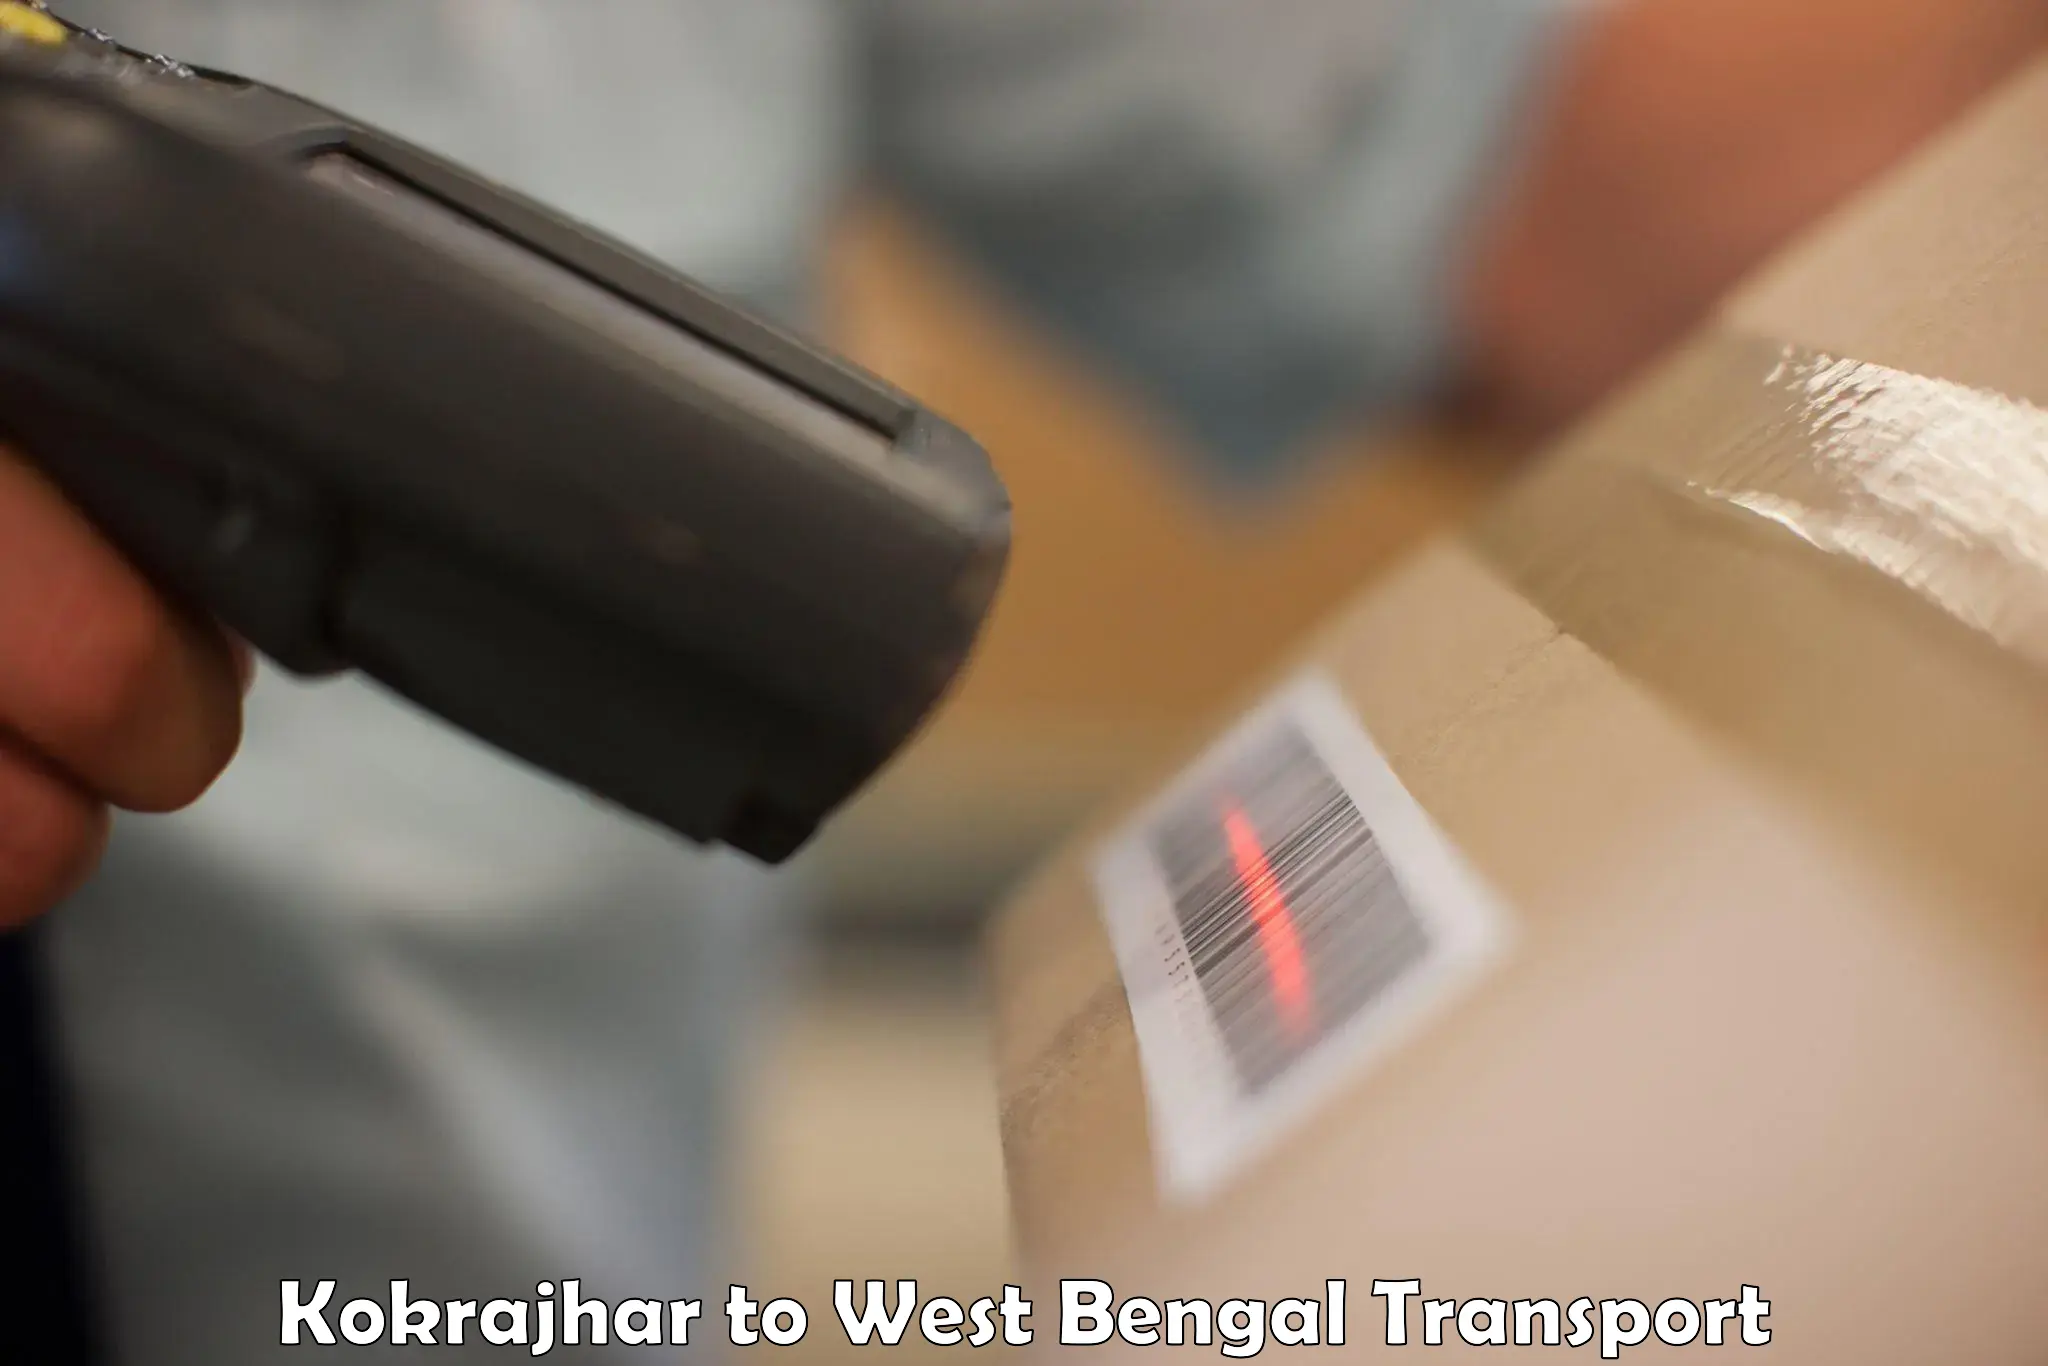 Furniture transport service Kokrajhar to West Bengal